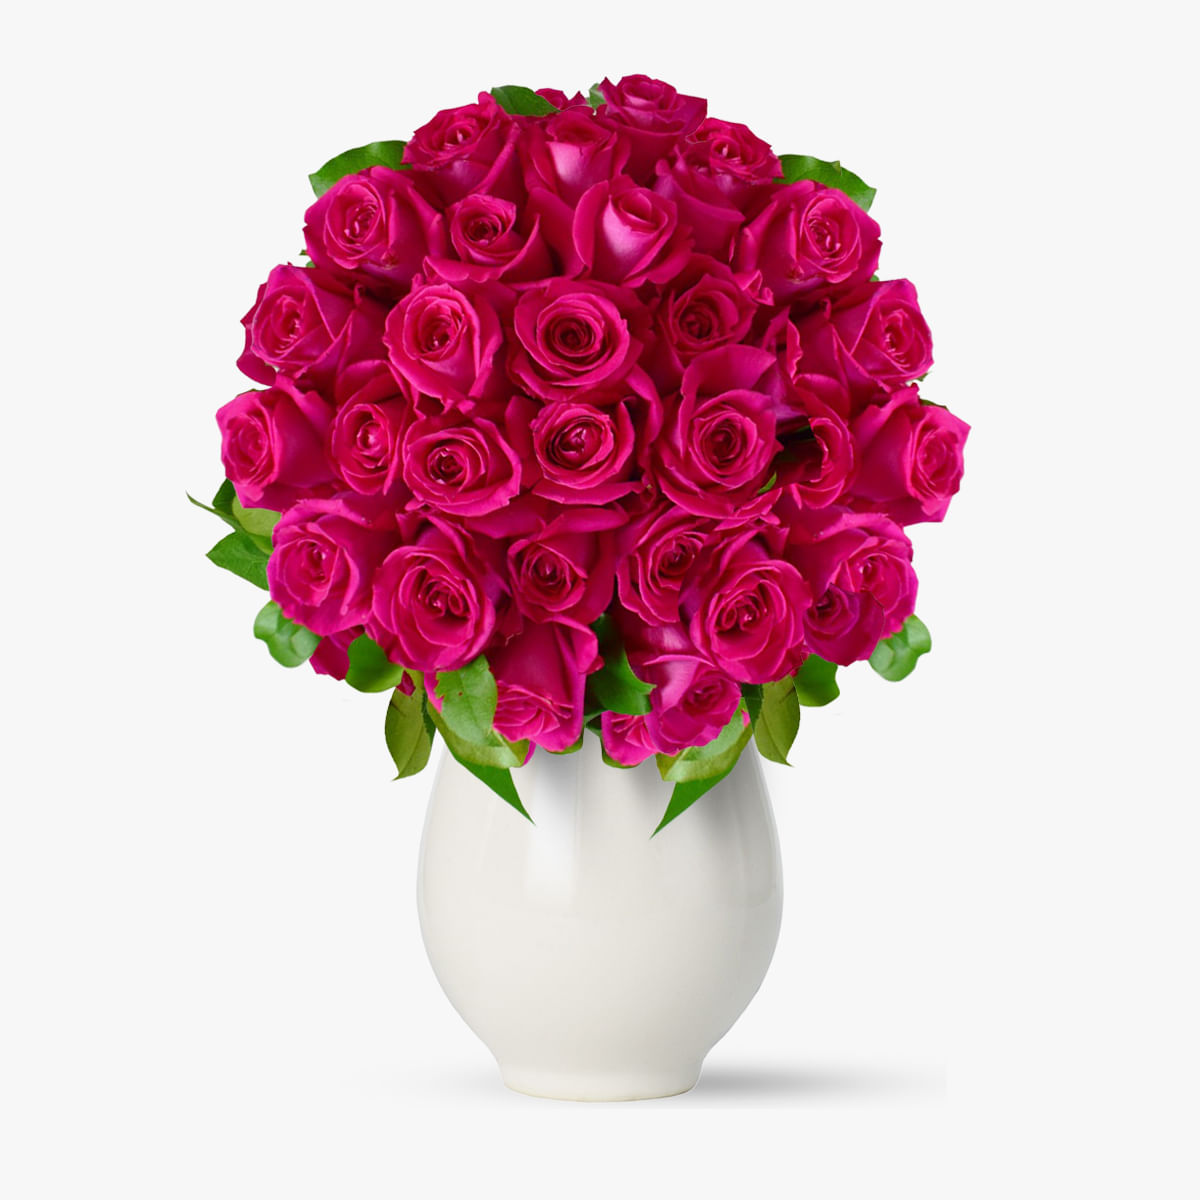 Buchet de 25 trandafiri roz – Standard